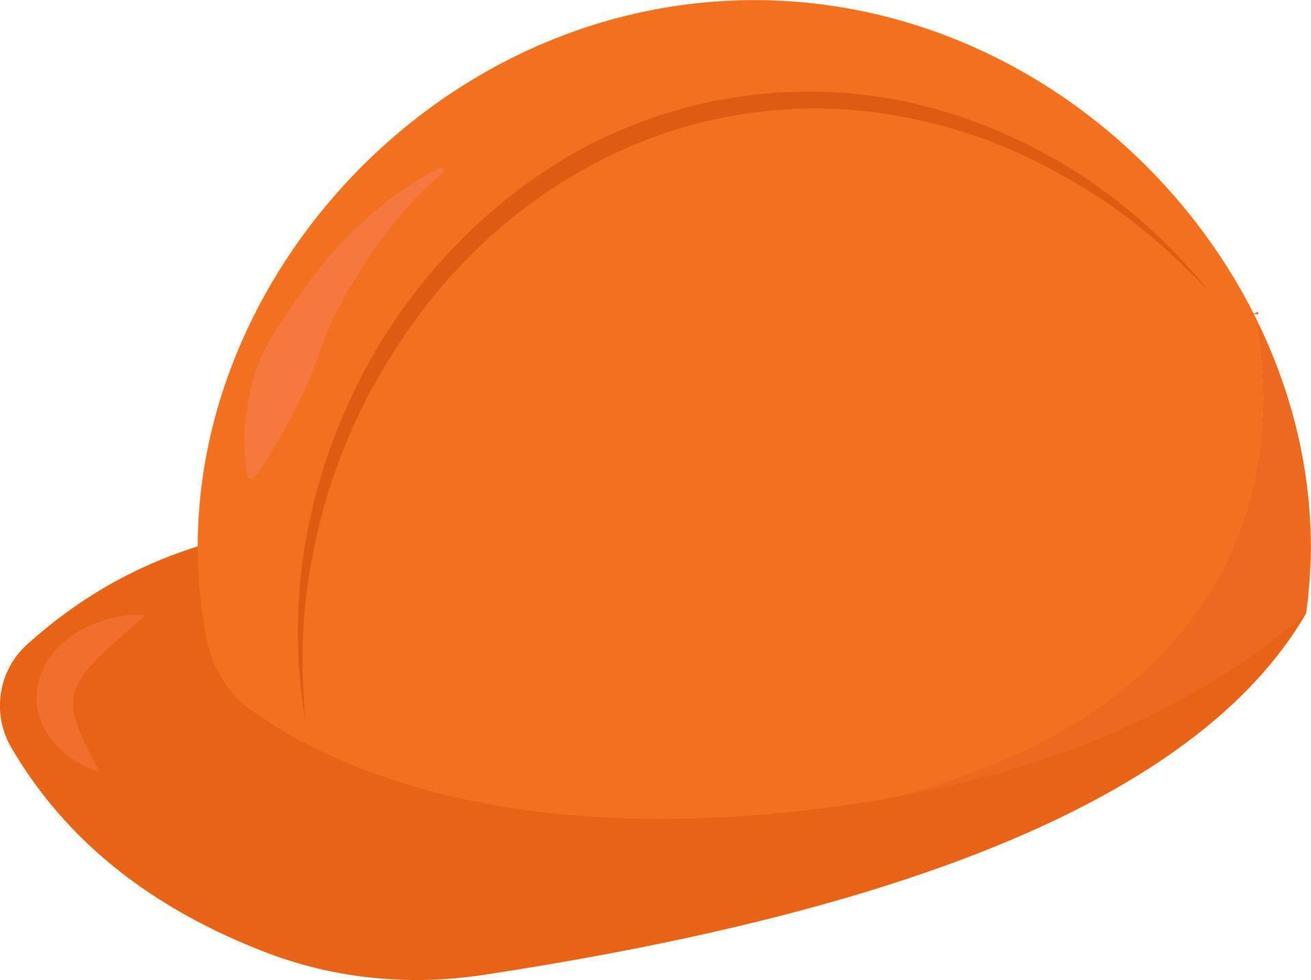 orangefarbener Hut, Illustration, Vektor auf weißem Hintergrund.